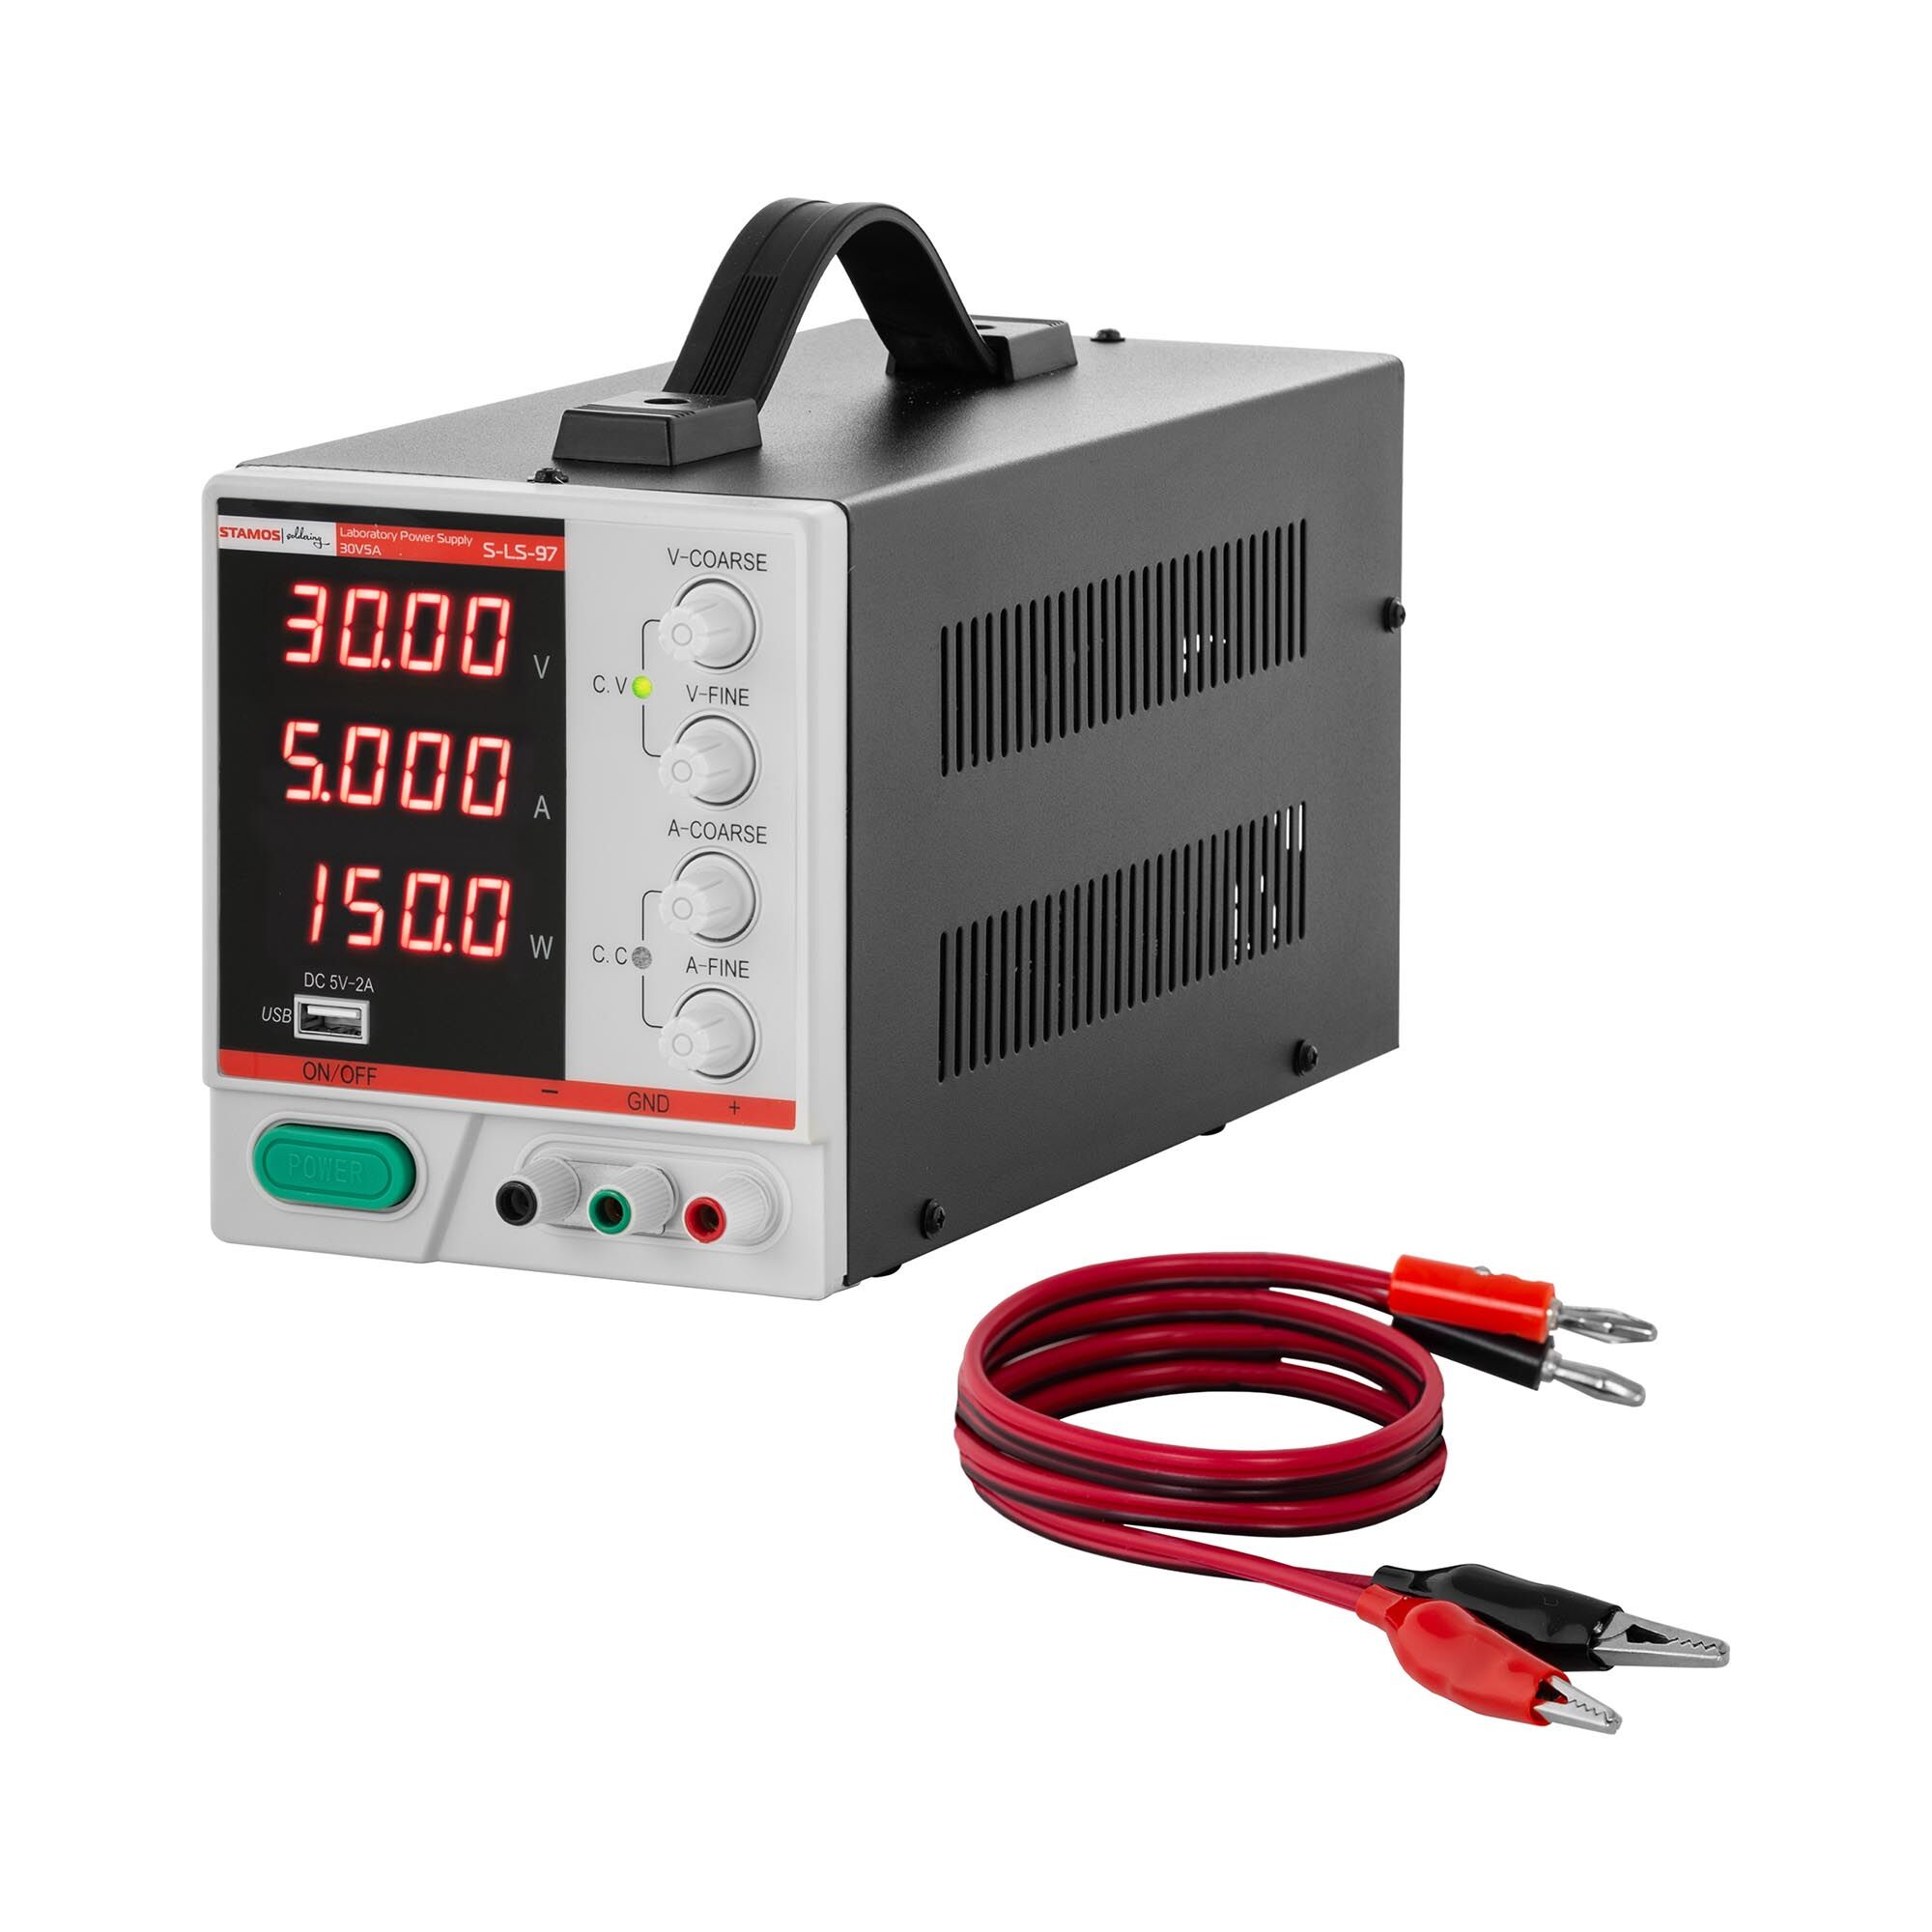 Stamos Soldering Laboratorní zdroj - 0–30 V - 0–5 A DC - 150 W - 4místní LED displej - USB S-LS-97